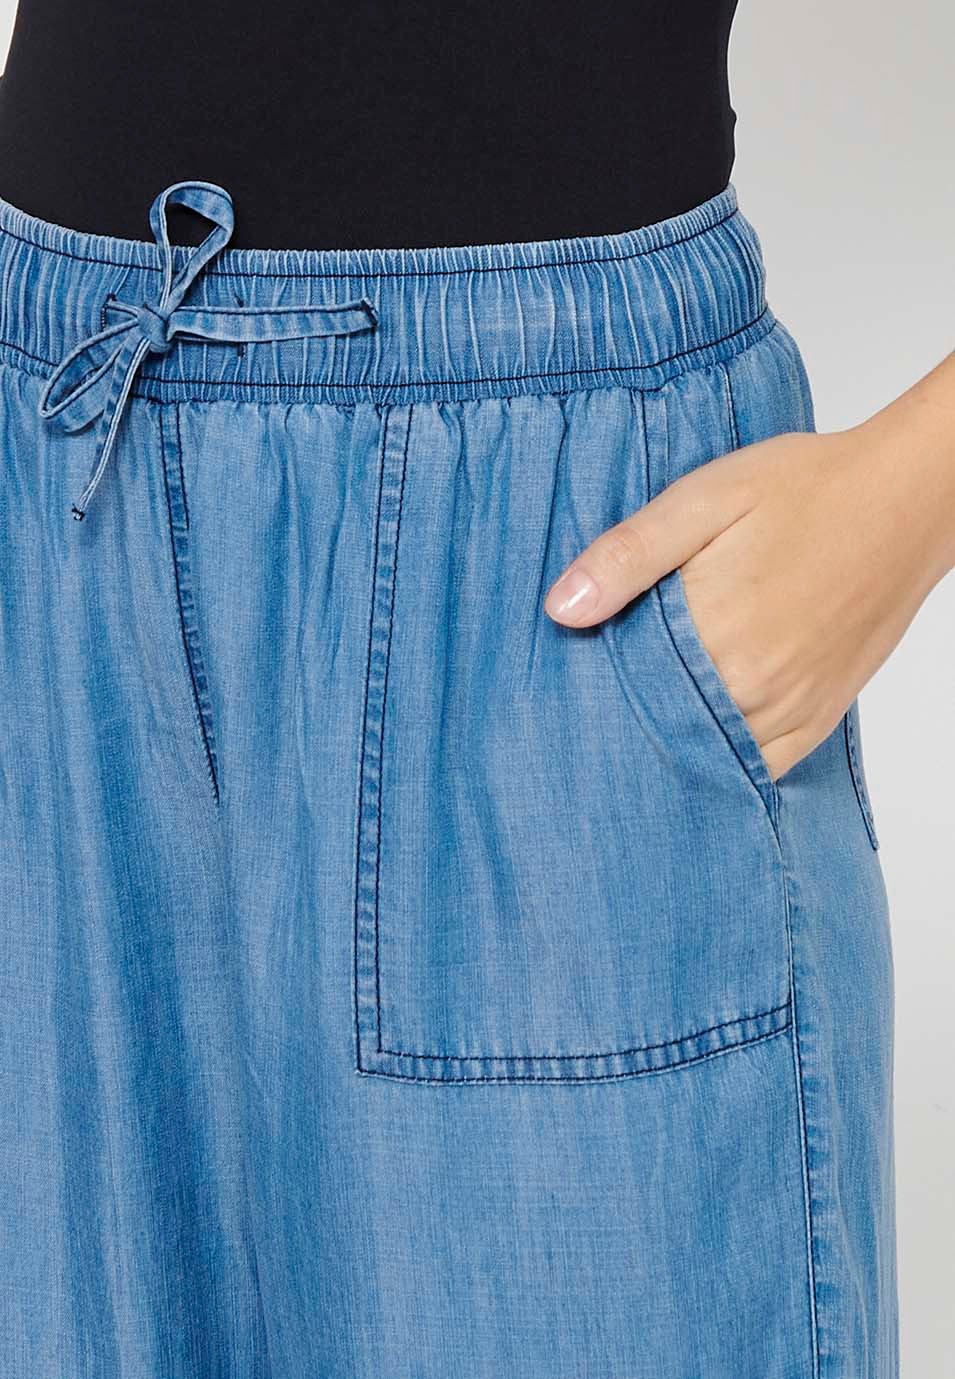 Pantalons llargs jogging amb cintura engomada color blau per a dona 7